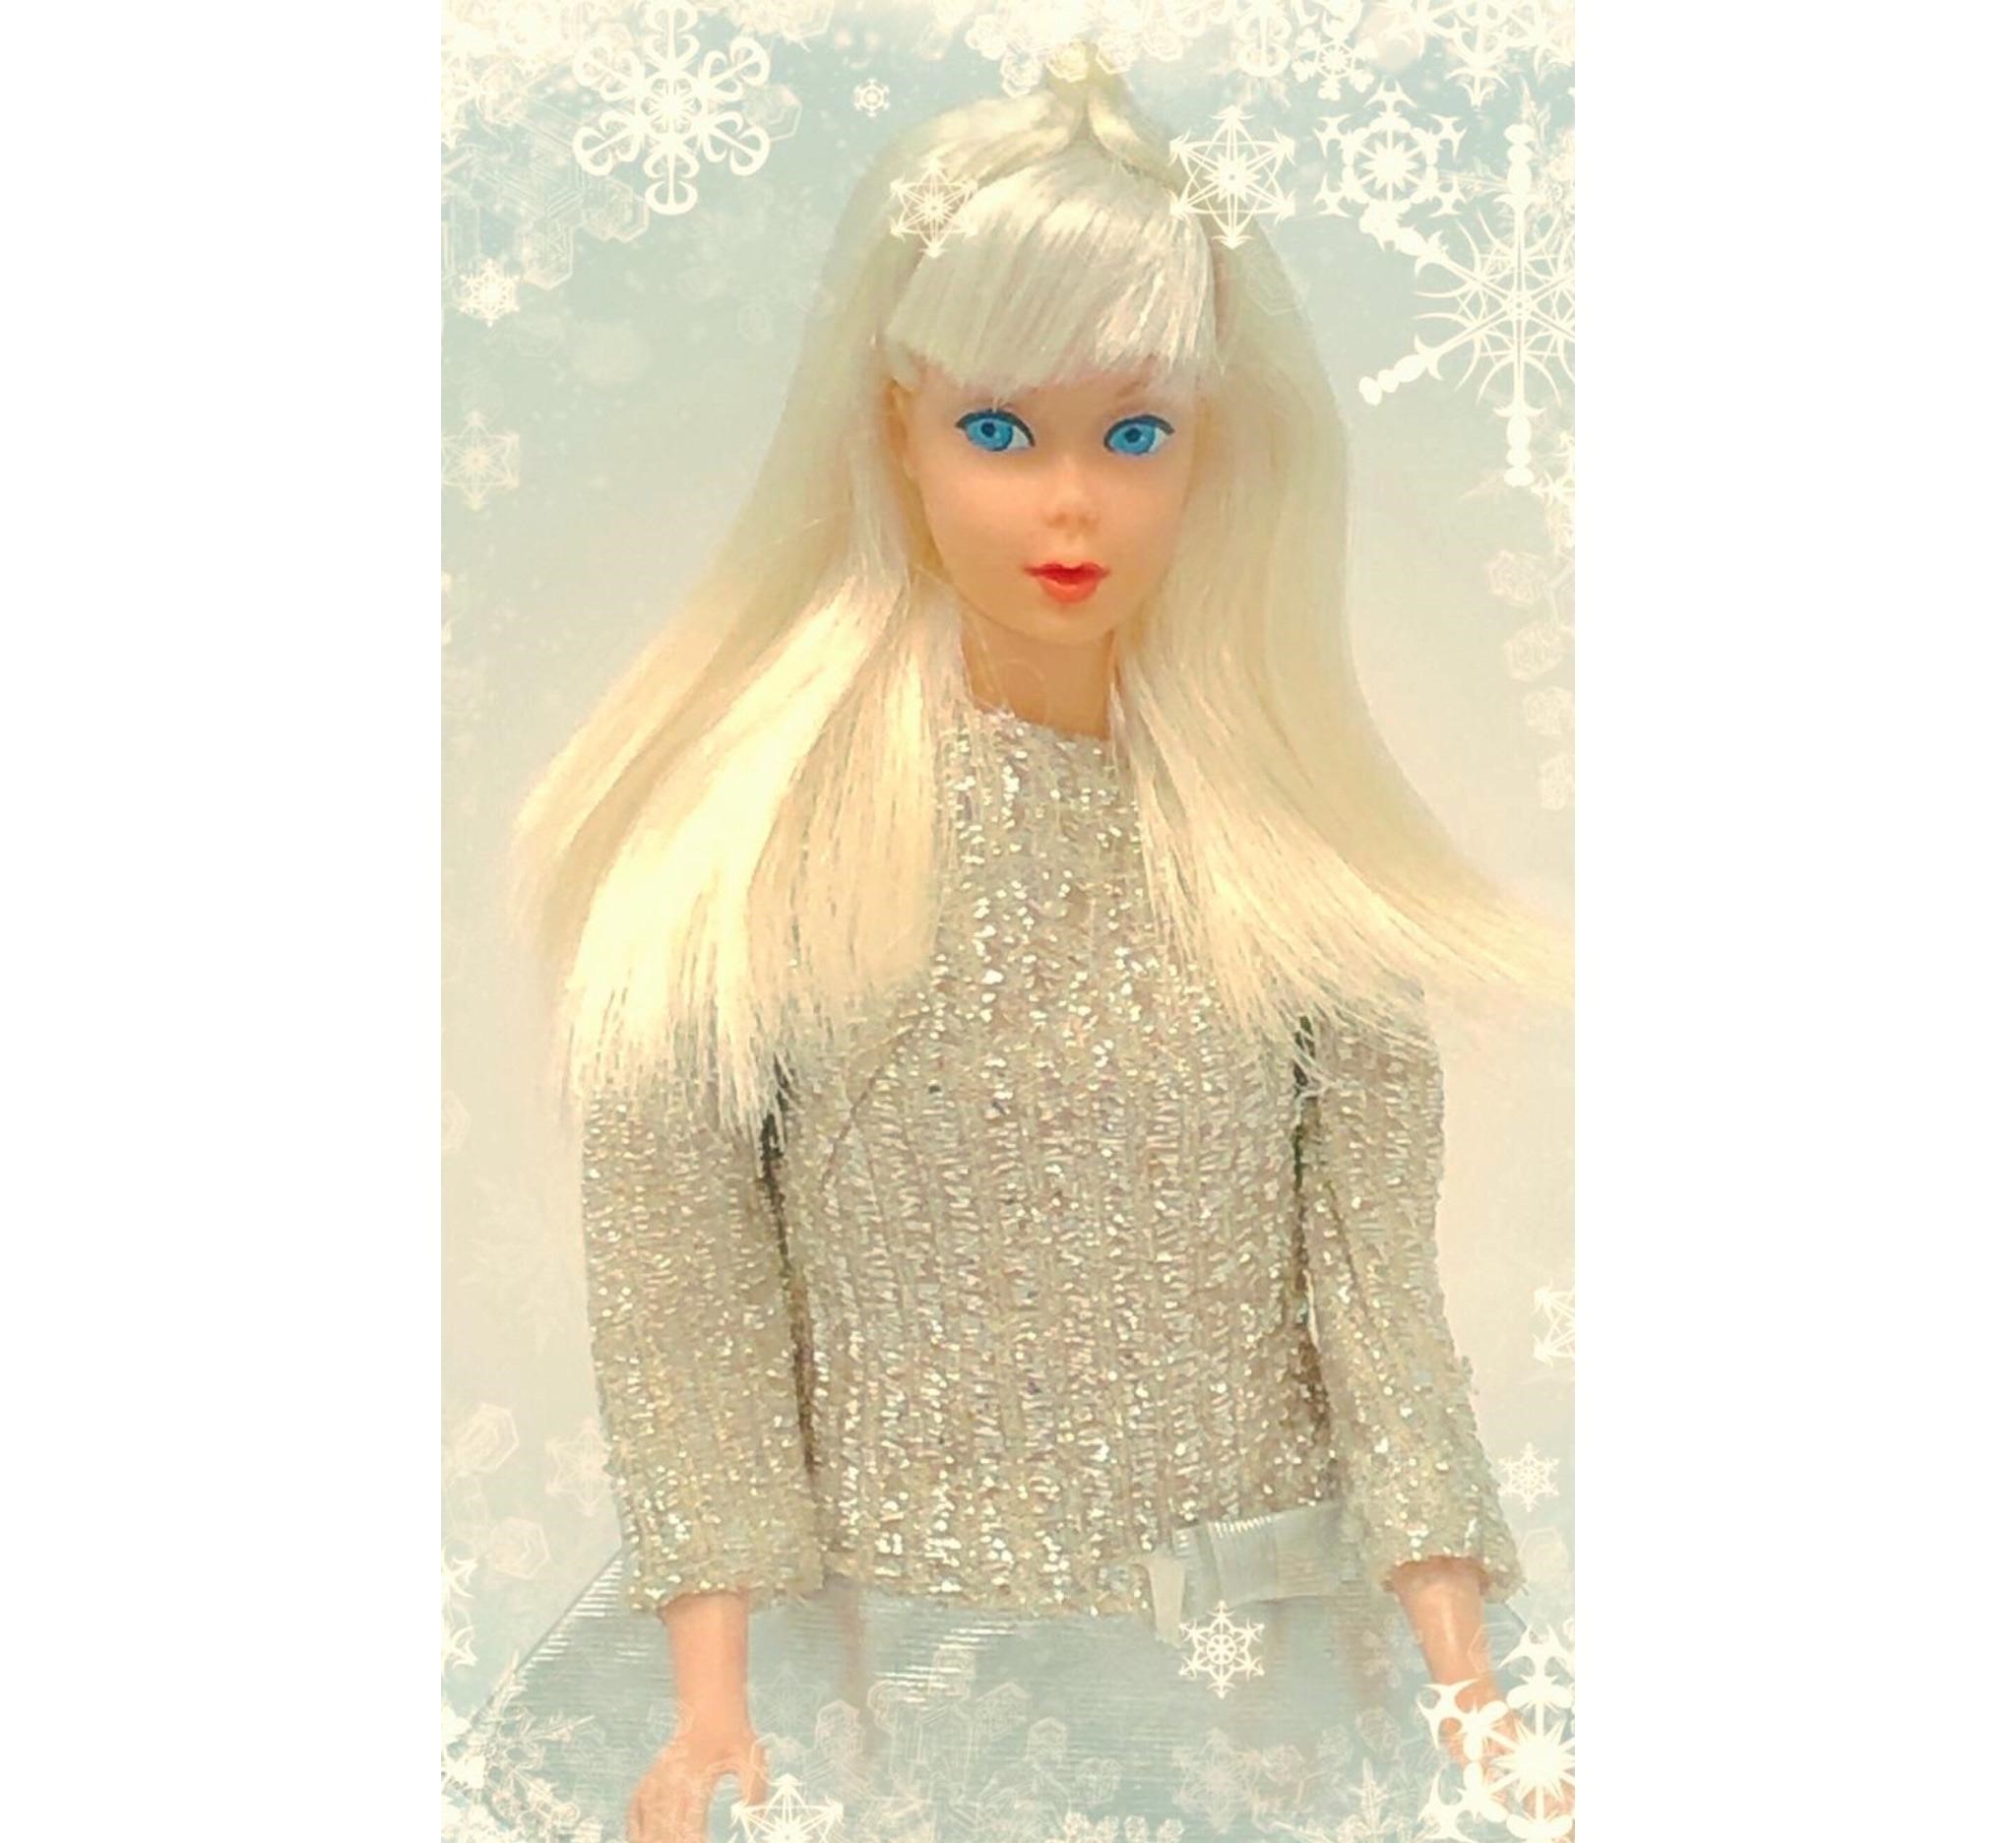 تصویر ناز از عروسک باربی با موهای یخی و لباس سفید عروس